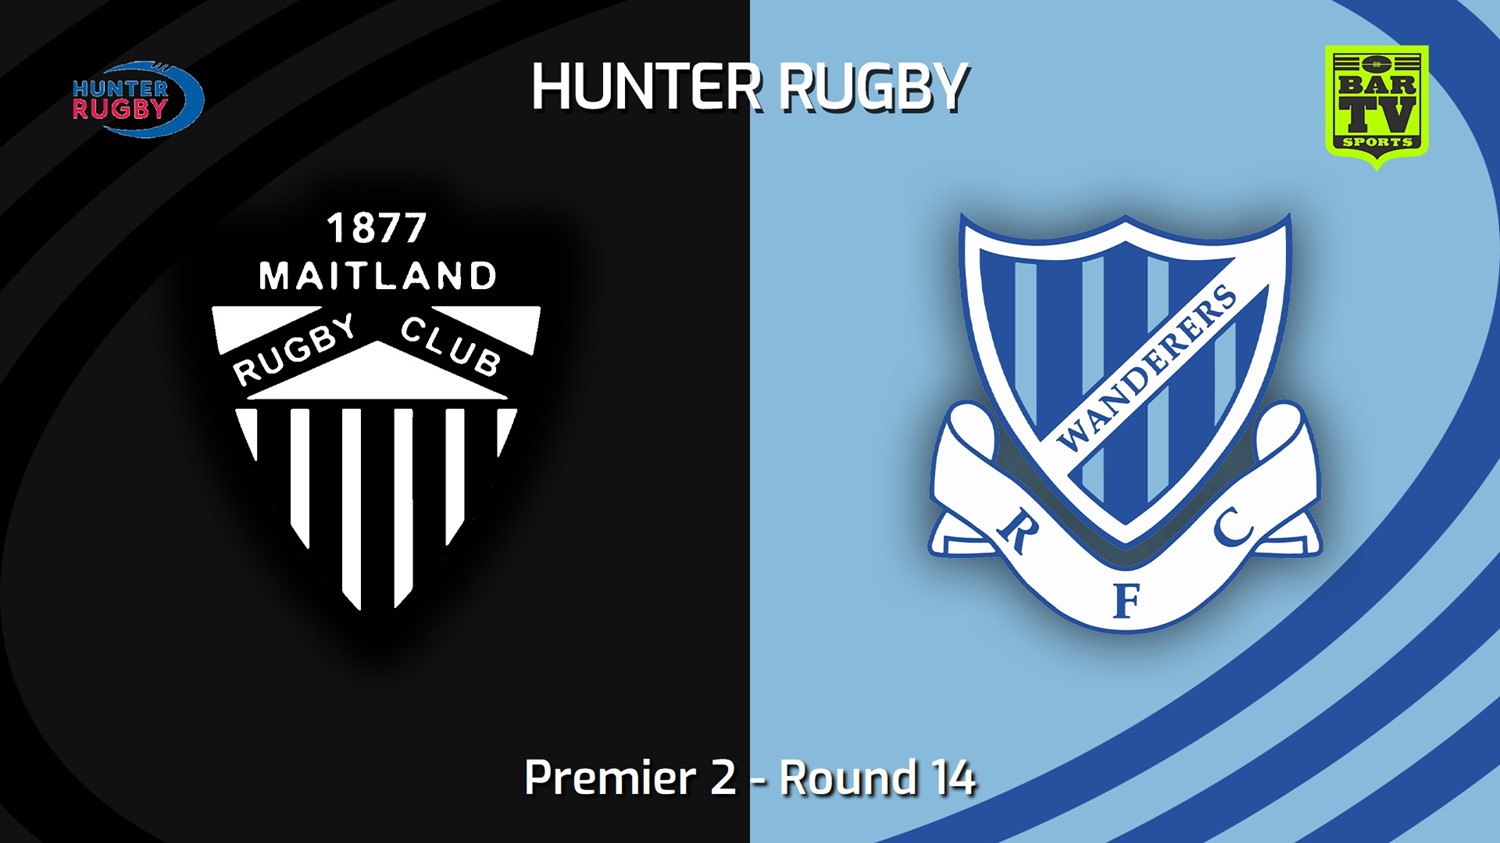 230722-Hunter Rugby Round 14 - Premier 2 - Maitland v Wanderers Slate Image